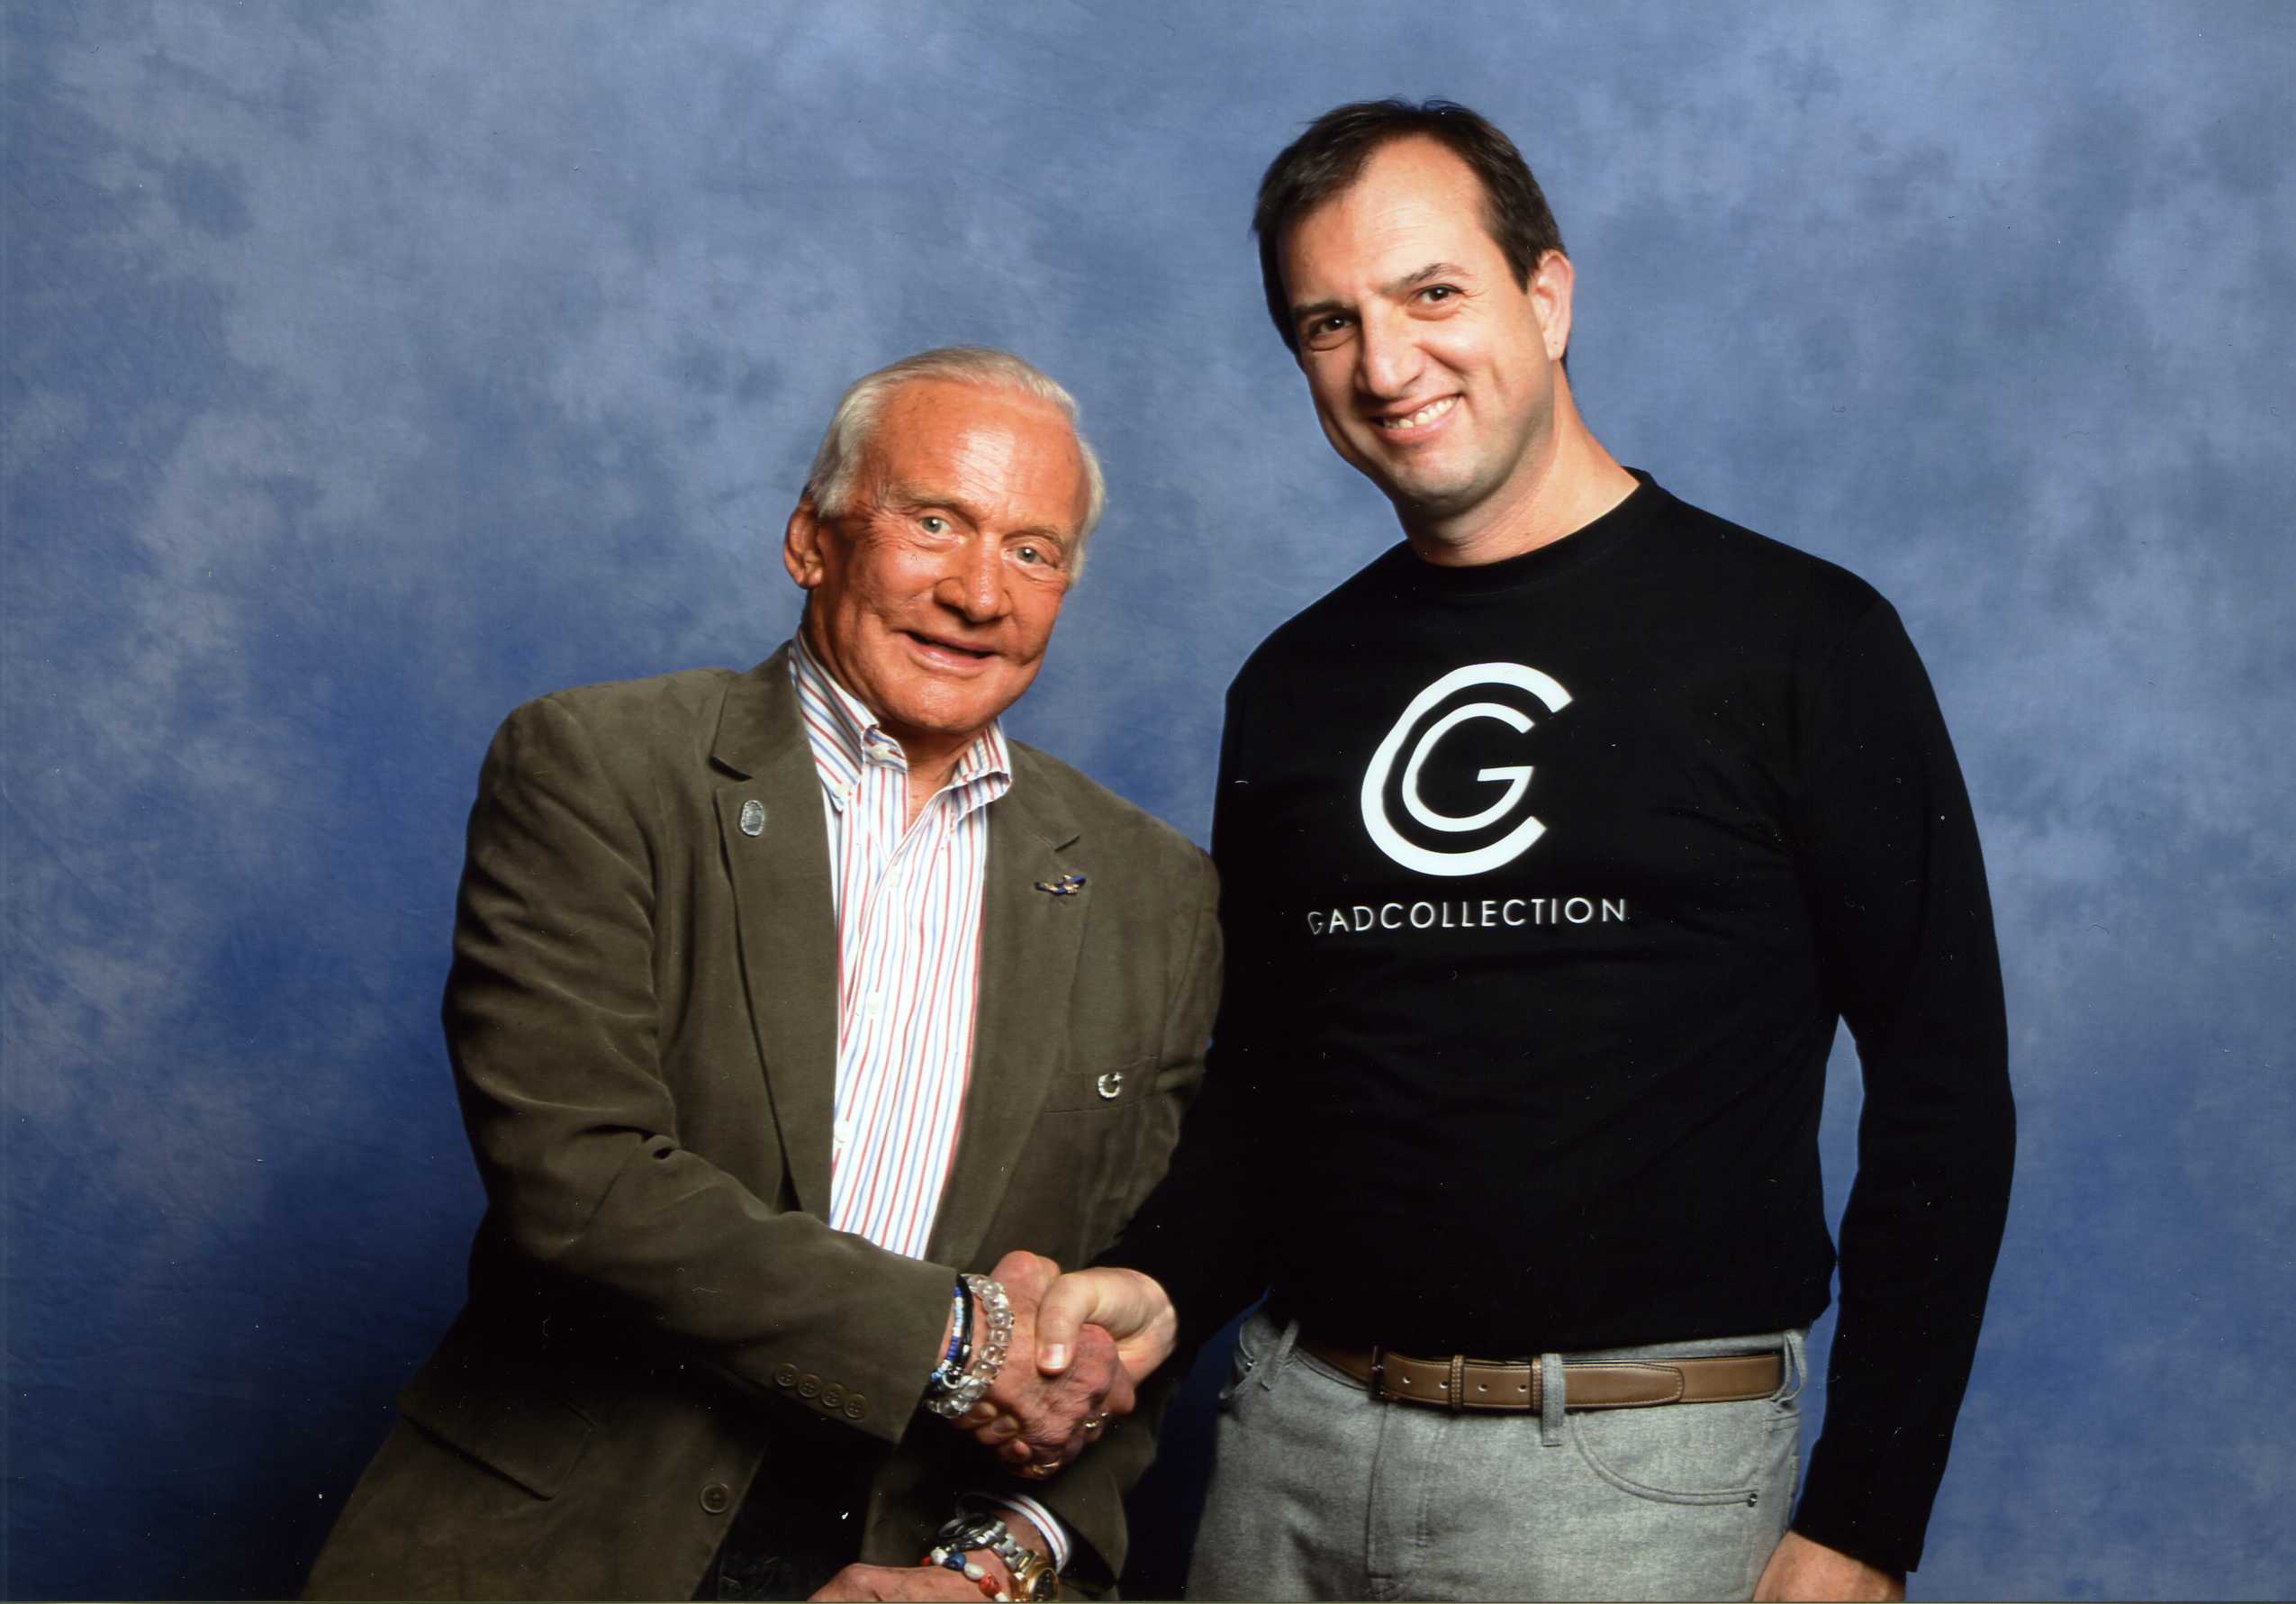 Meeting between Buzz Aldrin and Gad Edery